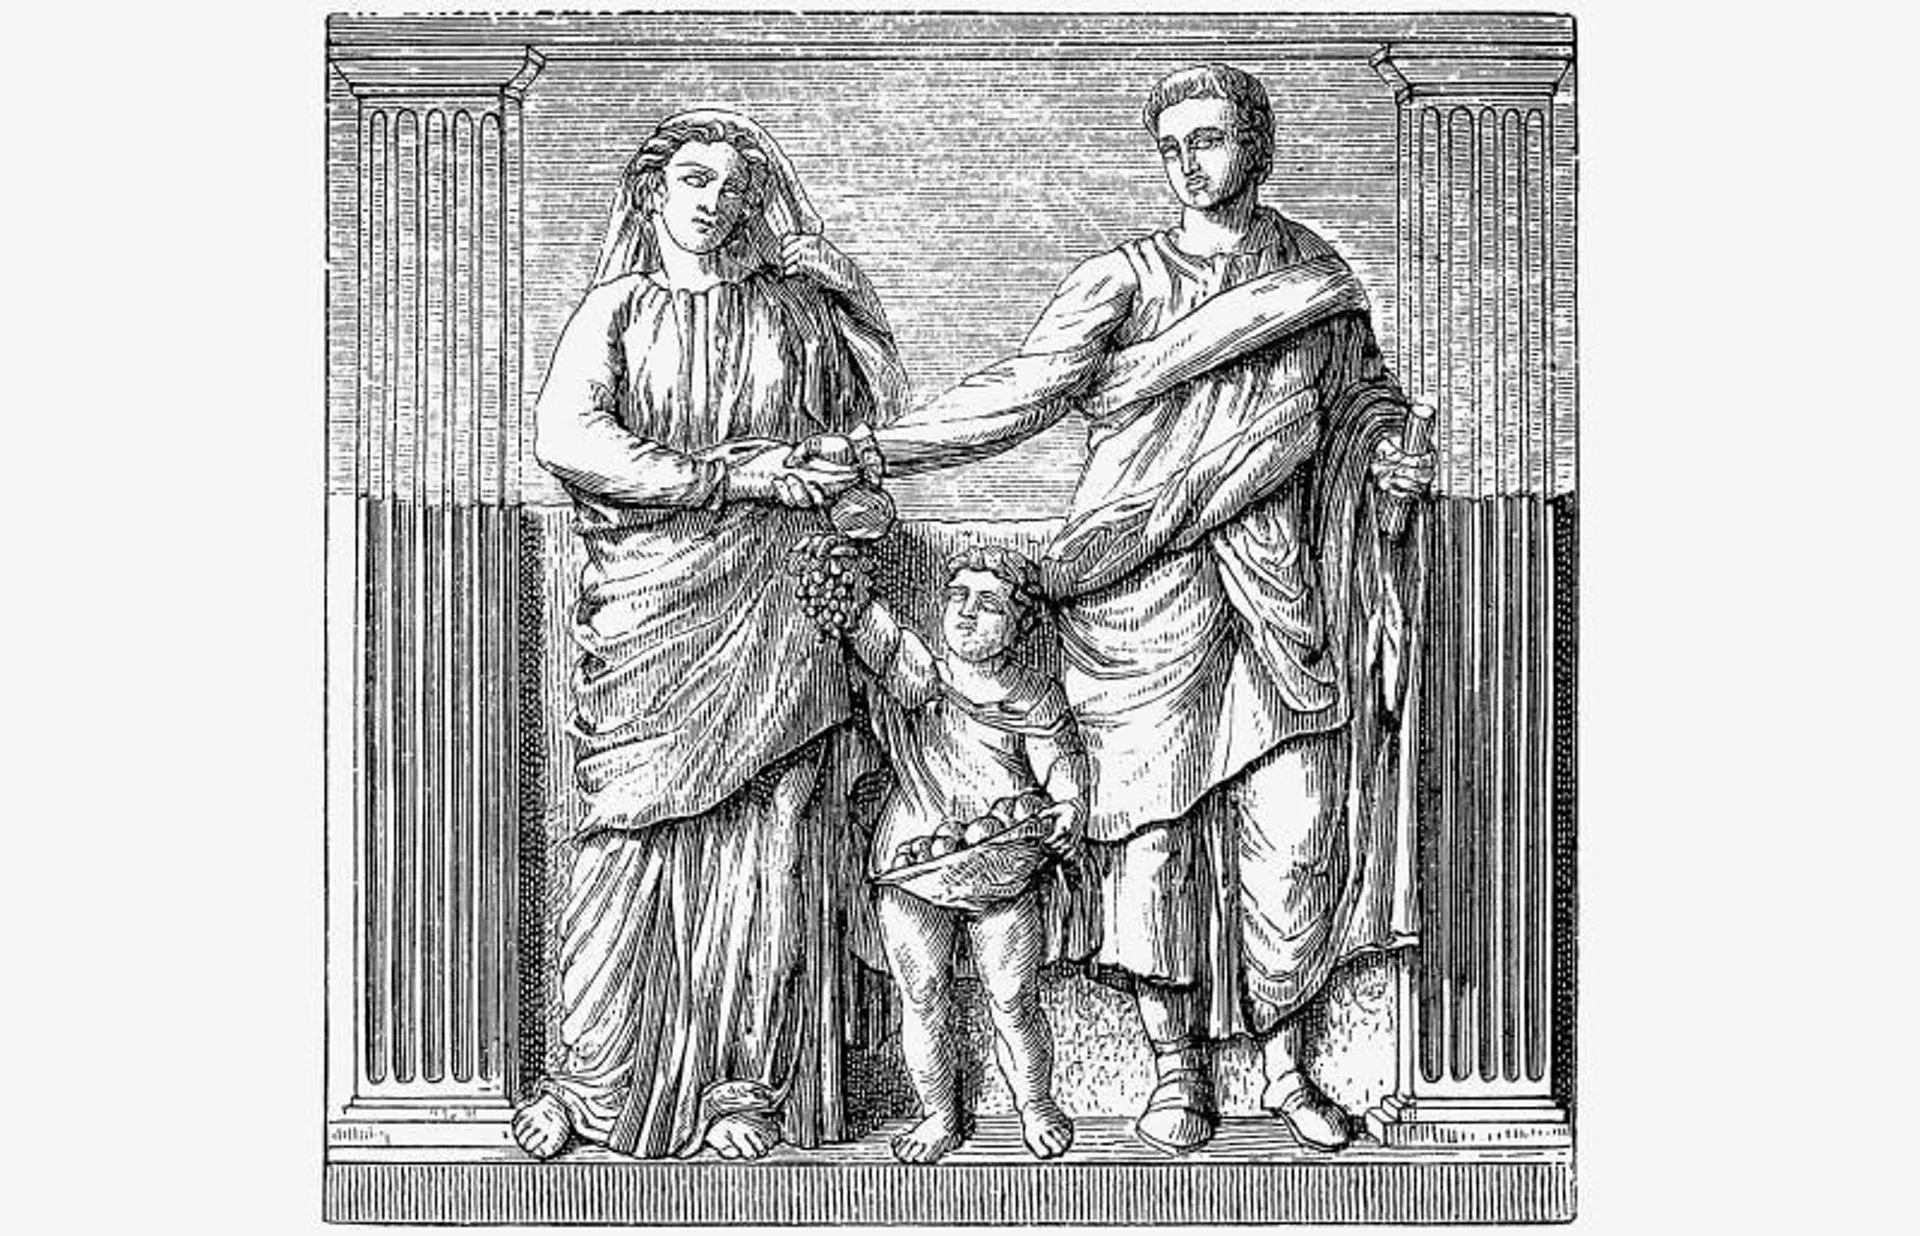 7 Fakta Kelam Kehidupan Perempuan di Masa Peradaban Romawi Kuno